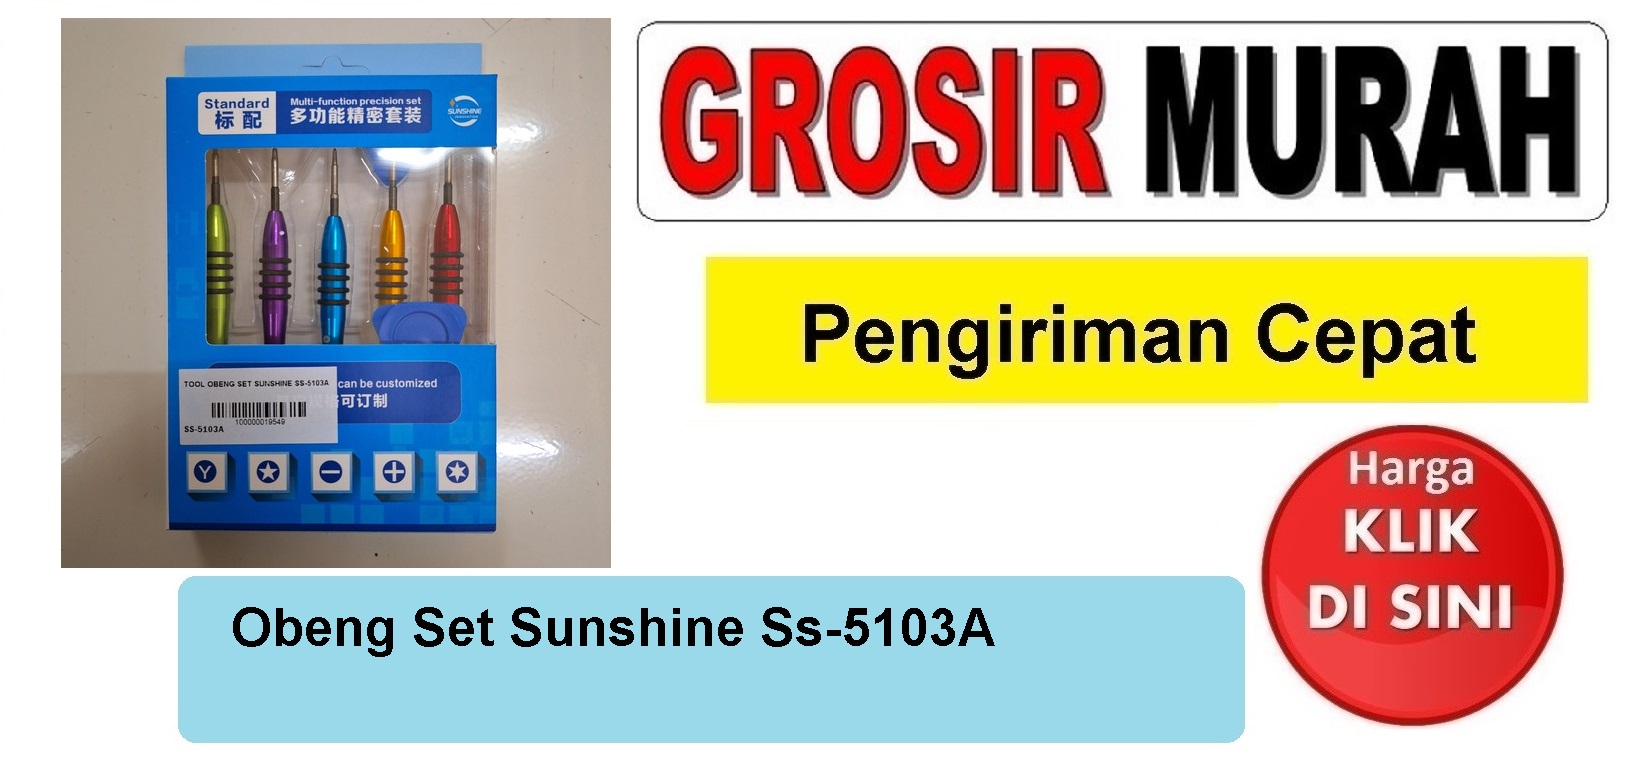 Pusat Penjualan Obeng Set Sunshine Ss-5103A Perlengkapan Service Toolkit Alat Serpis teknisi Spare Part Hp Grosir